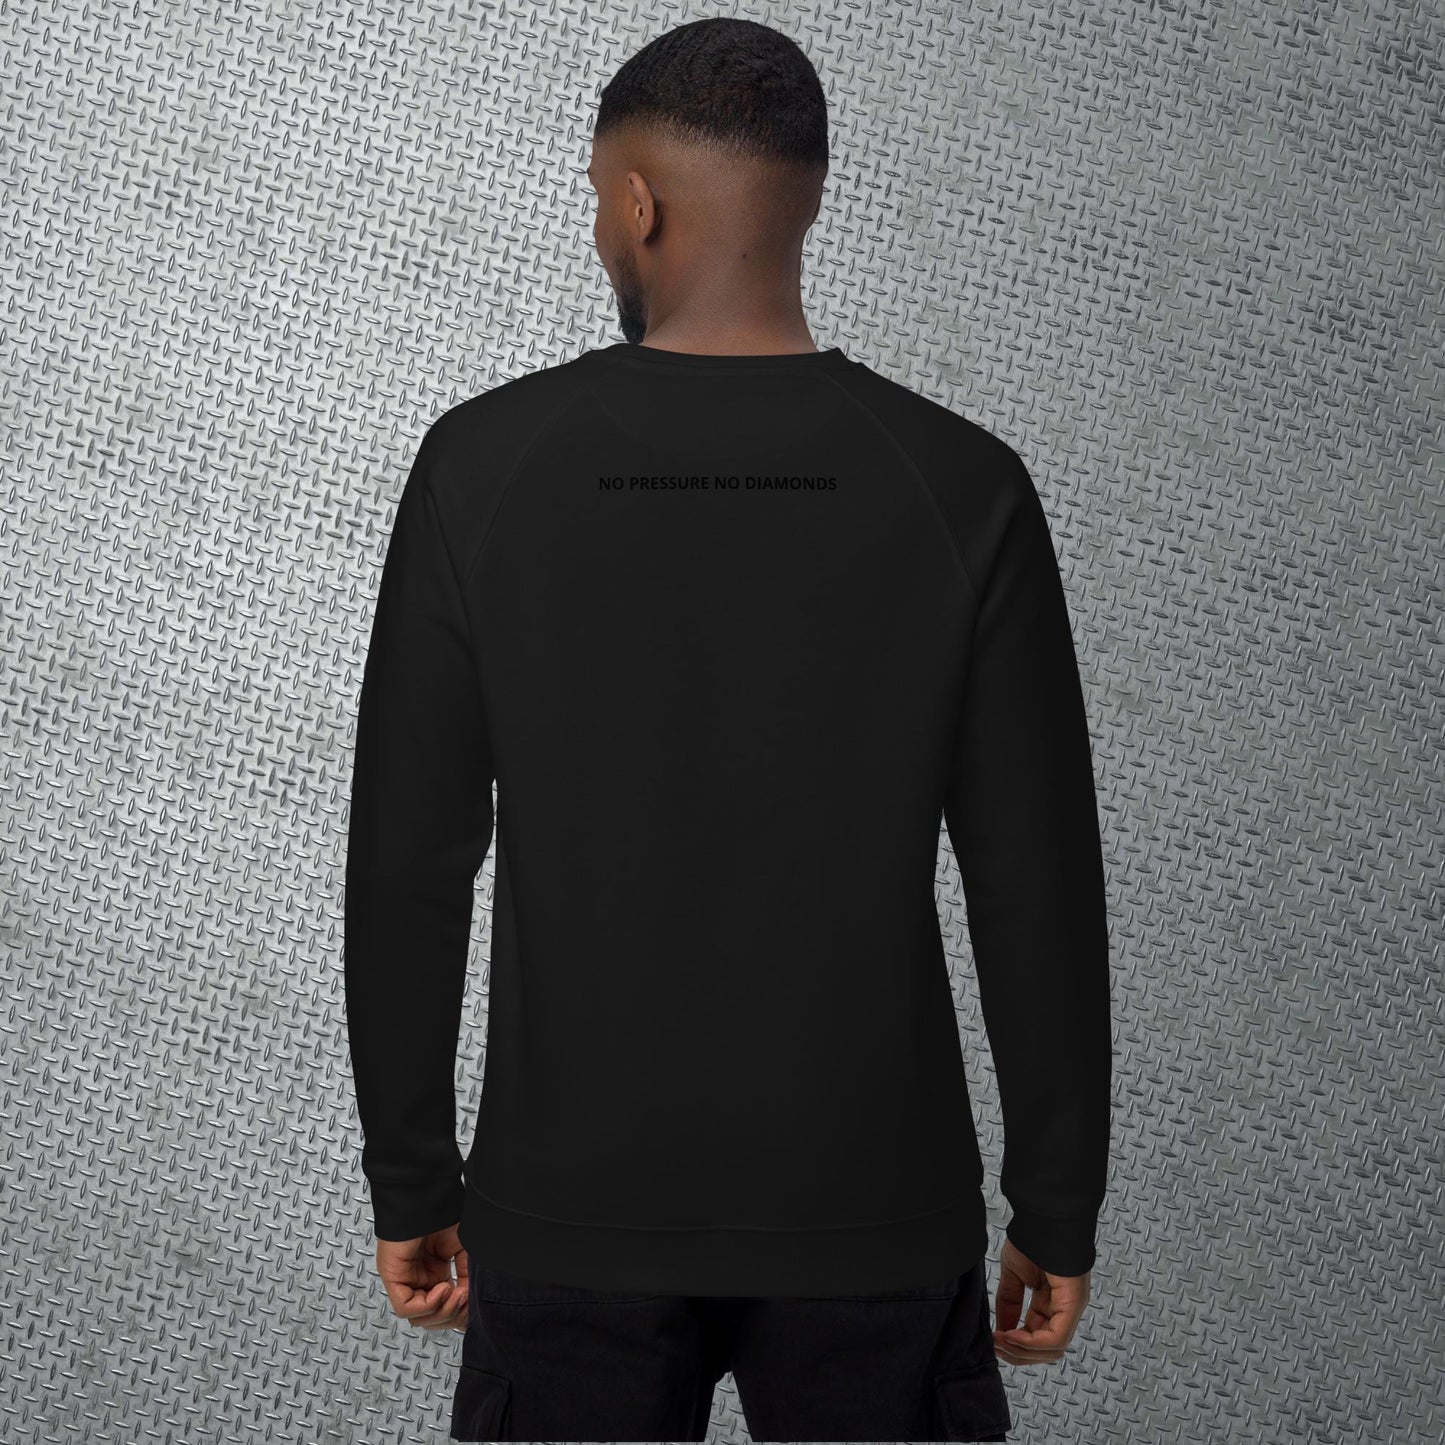 BLACKOUT Organic Raglan Sweatshirt